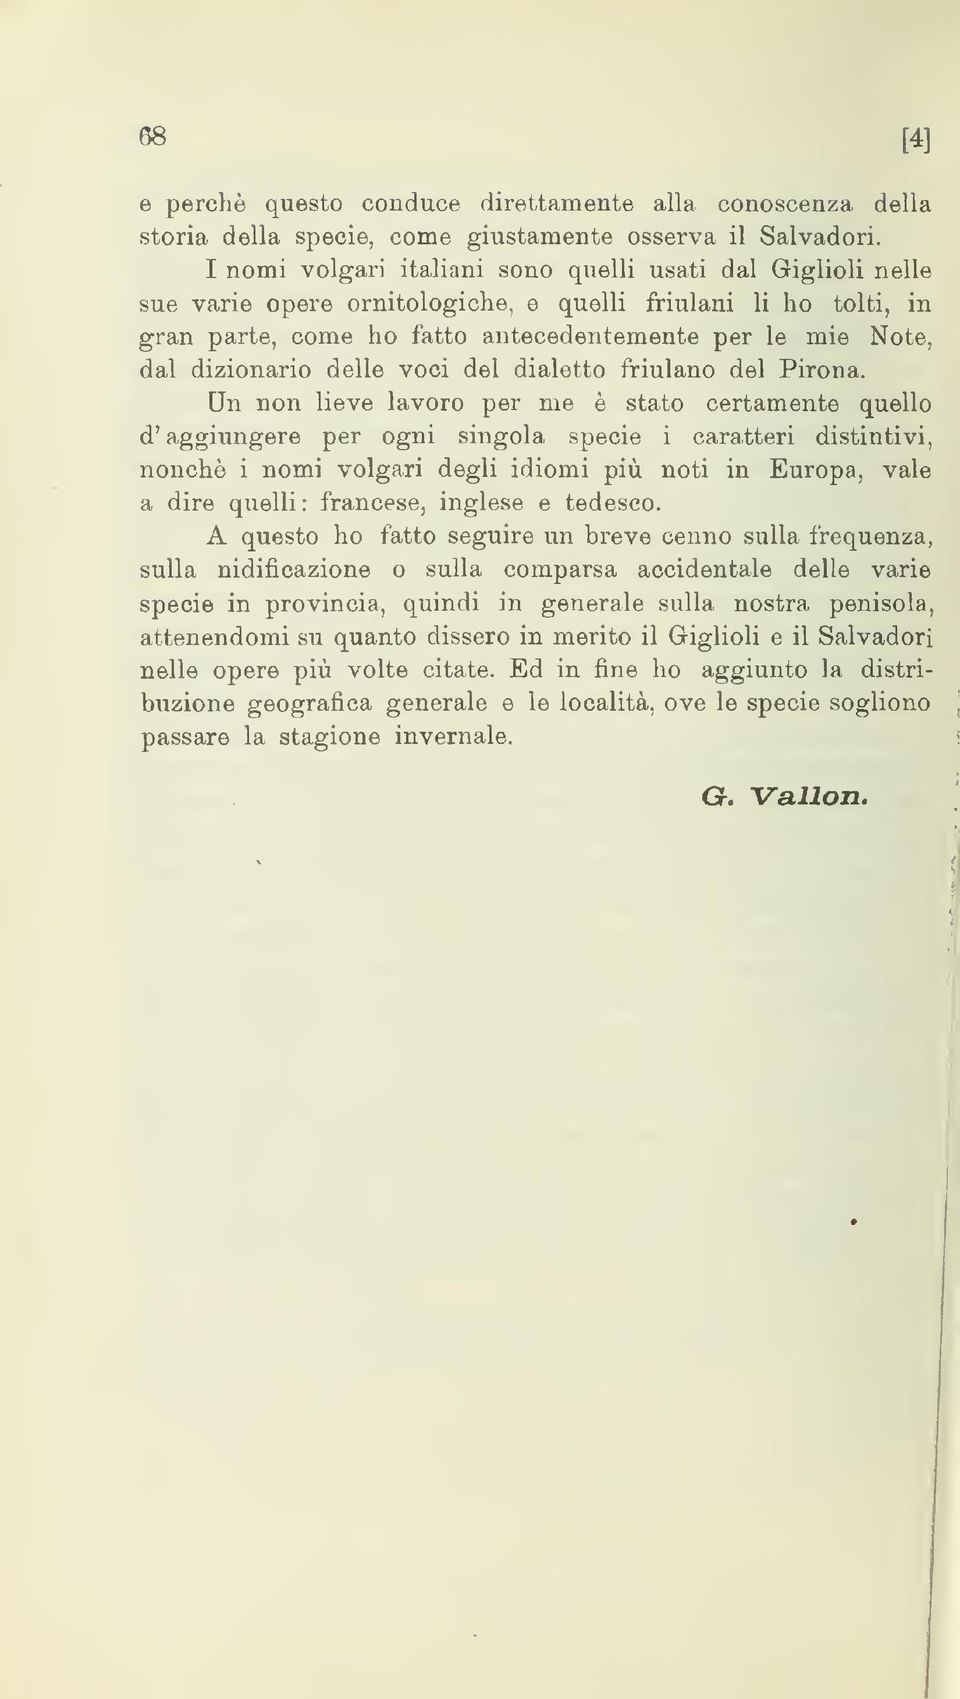 dizionario delle voci del dialetto friulano del Pirona.